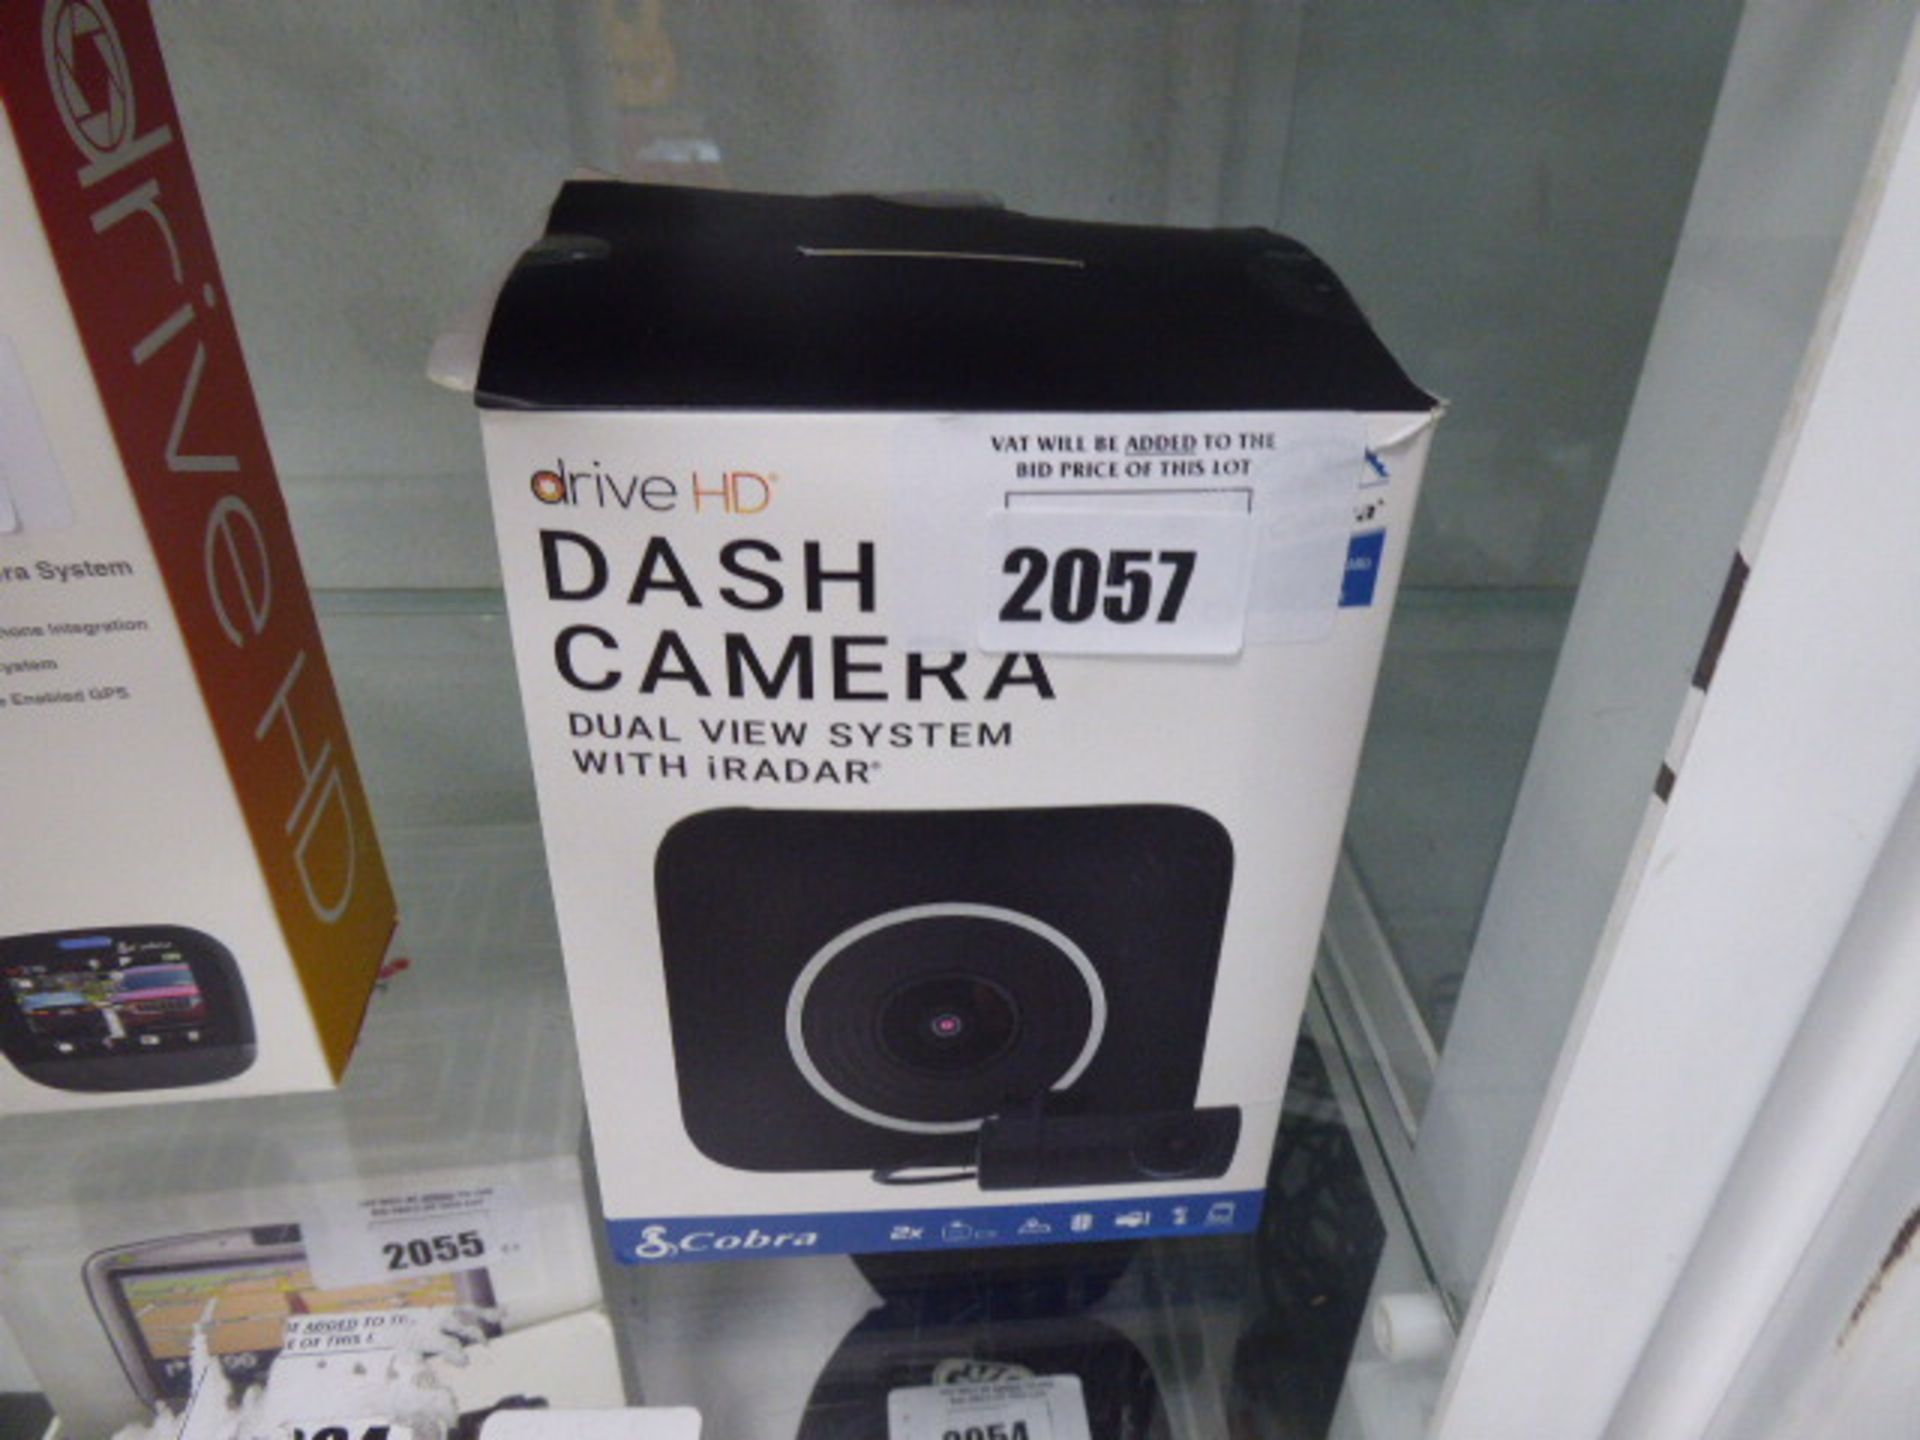 DRive HD by Cobra dash cam in box